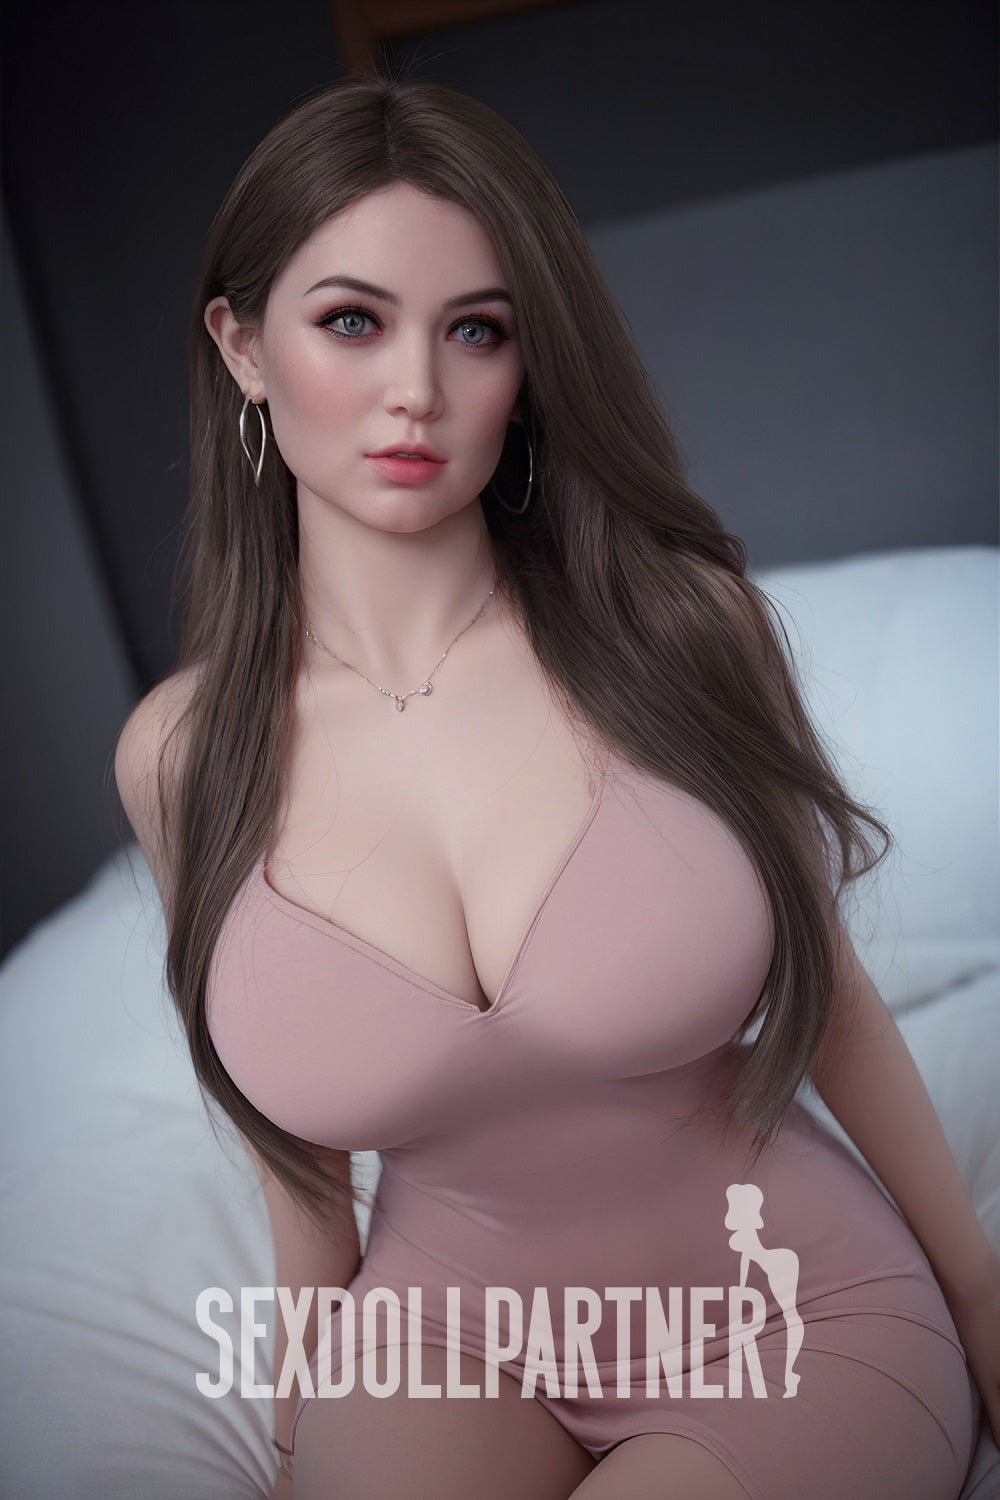 EU Stock - Judith 5ft31 / 162cm #273 Realistic BBW Fat Ass Sex Doll For Men